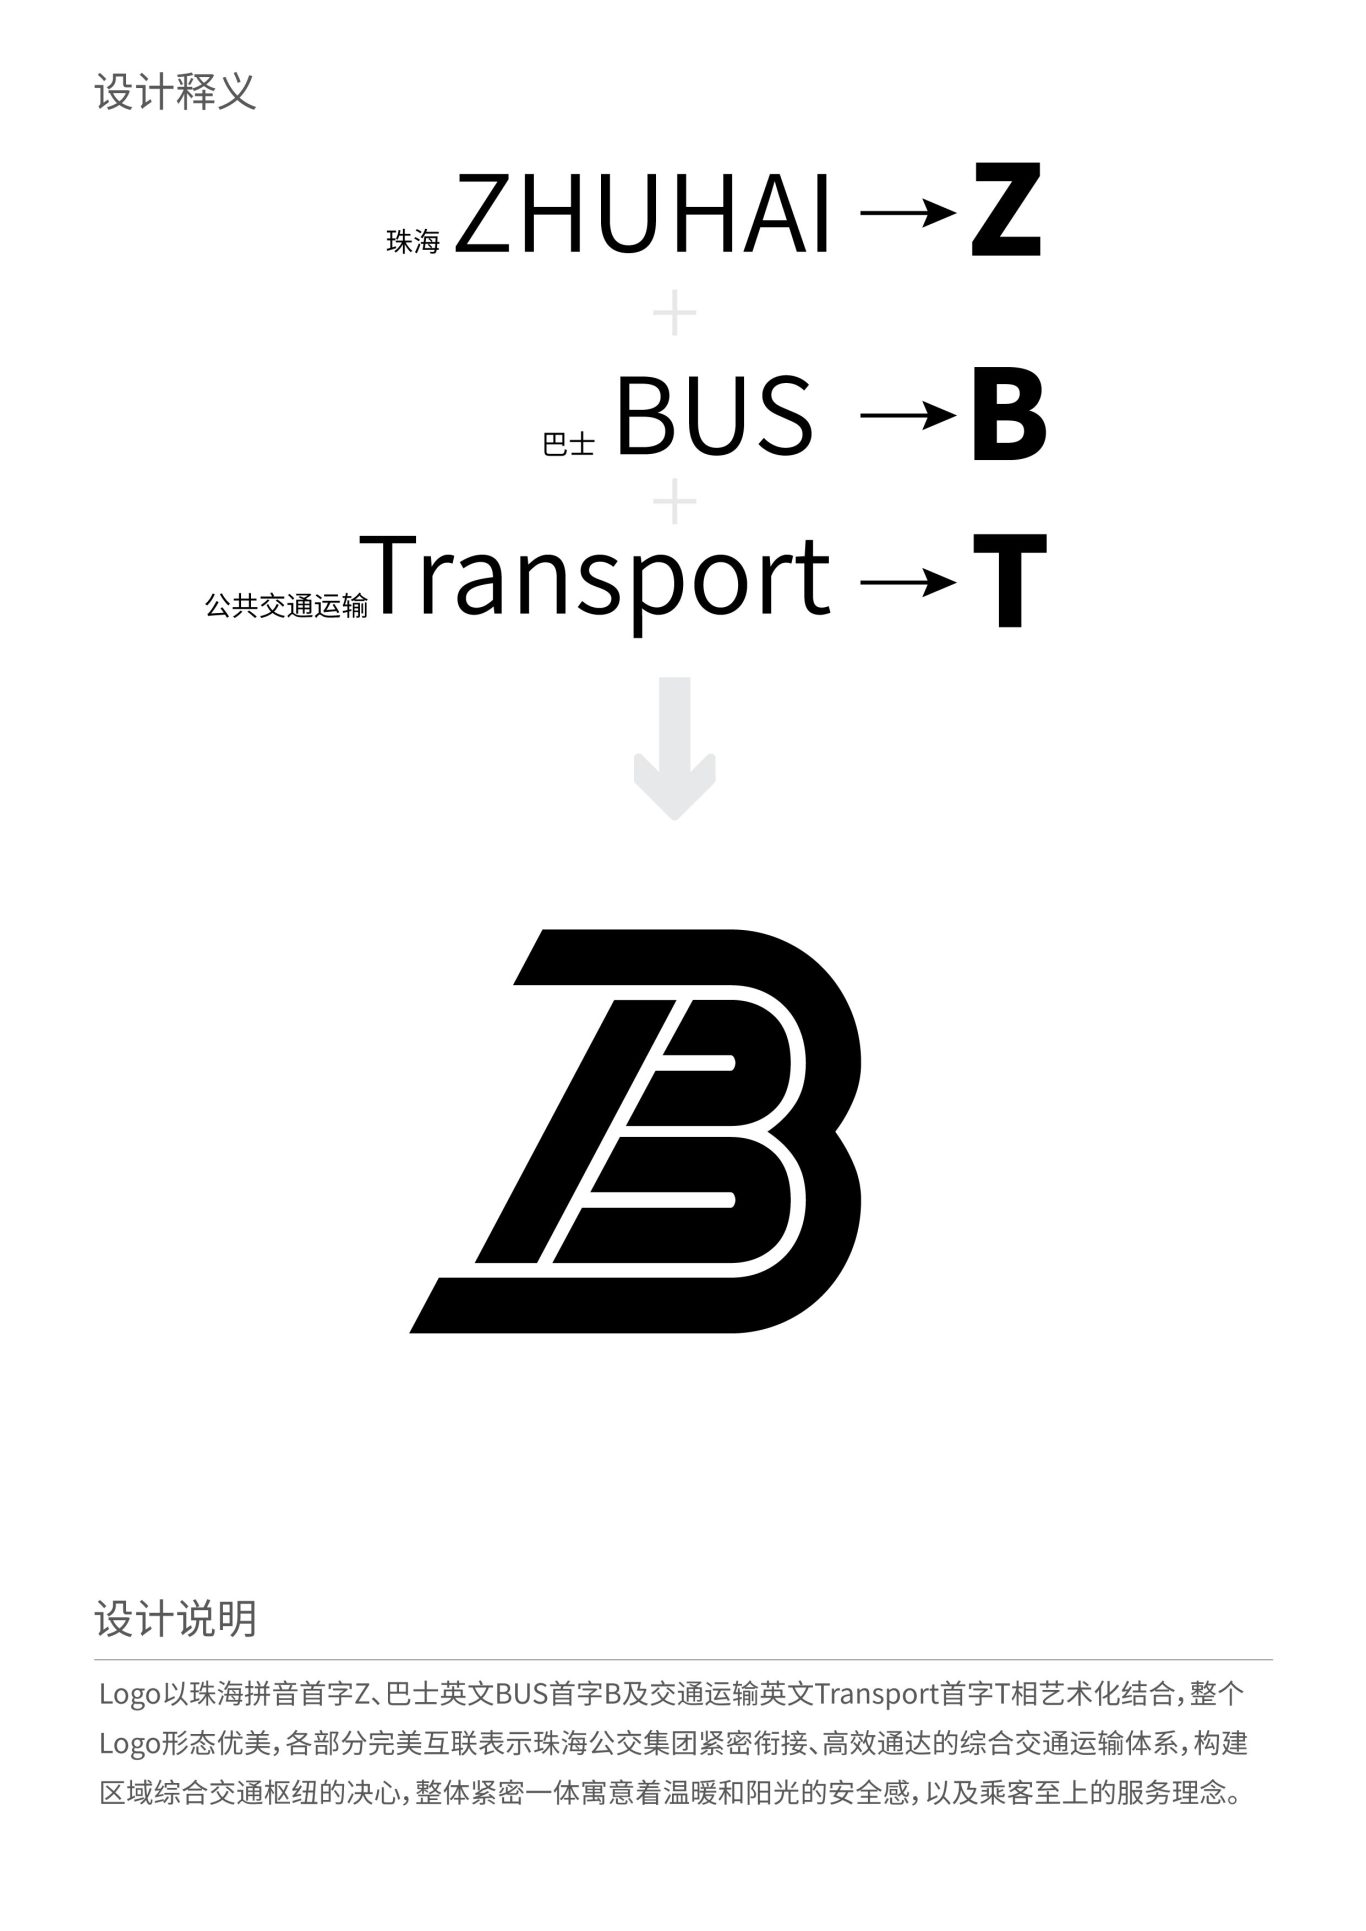 珠海公交巴士logo设计图1